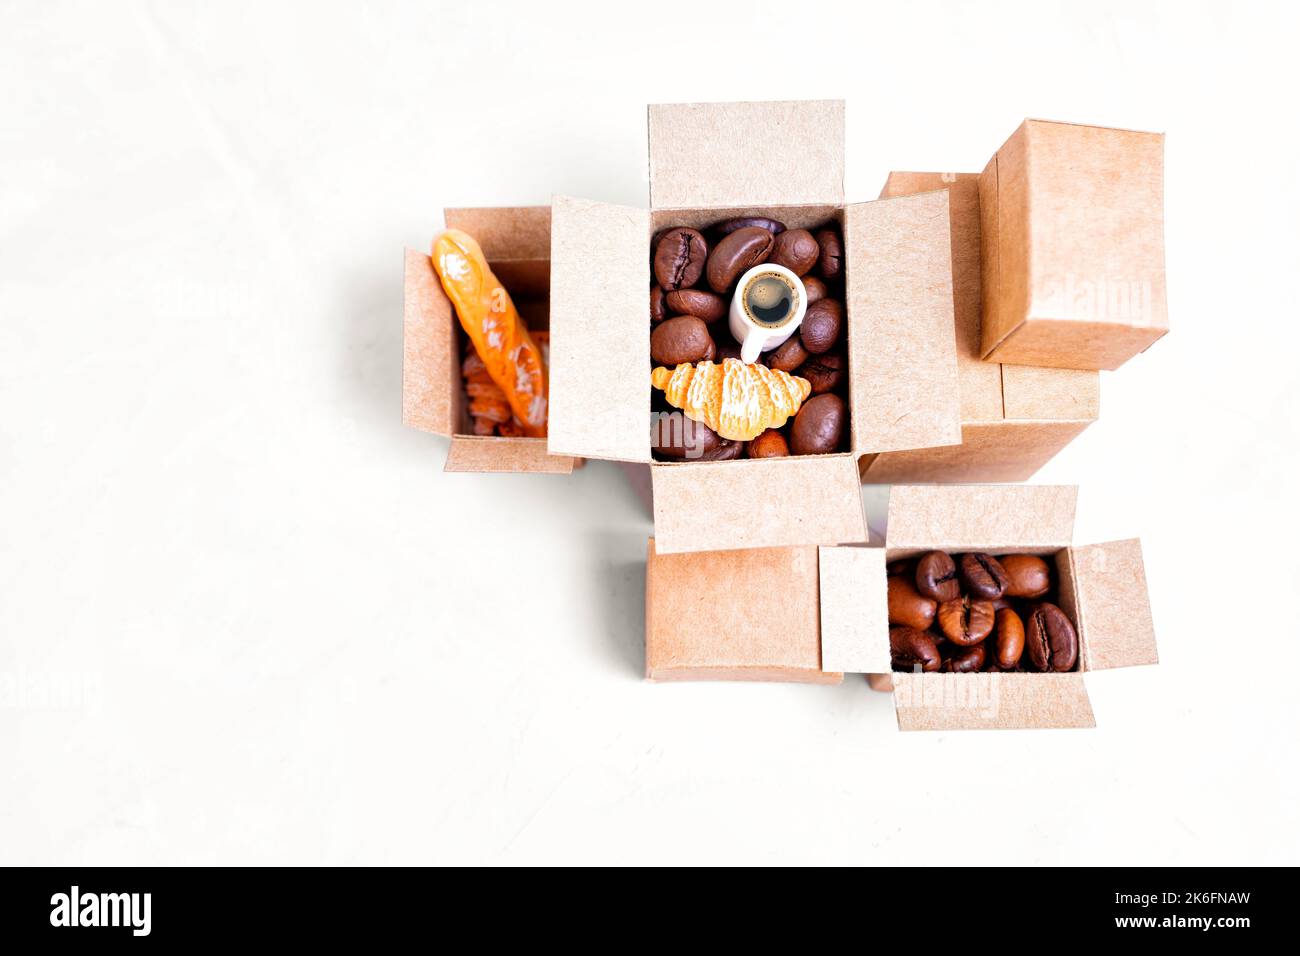 Concetto di forniture Creative Coffee Shop: Scatole di cartone in miniatura piene di chicchi di caffè torrefatti e prodotti da forno. Foto Stock